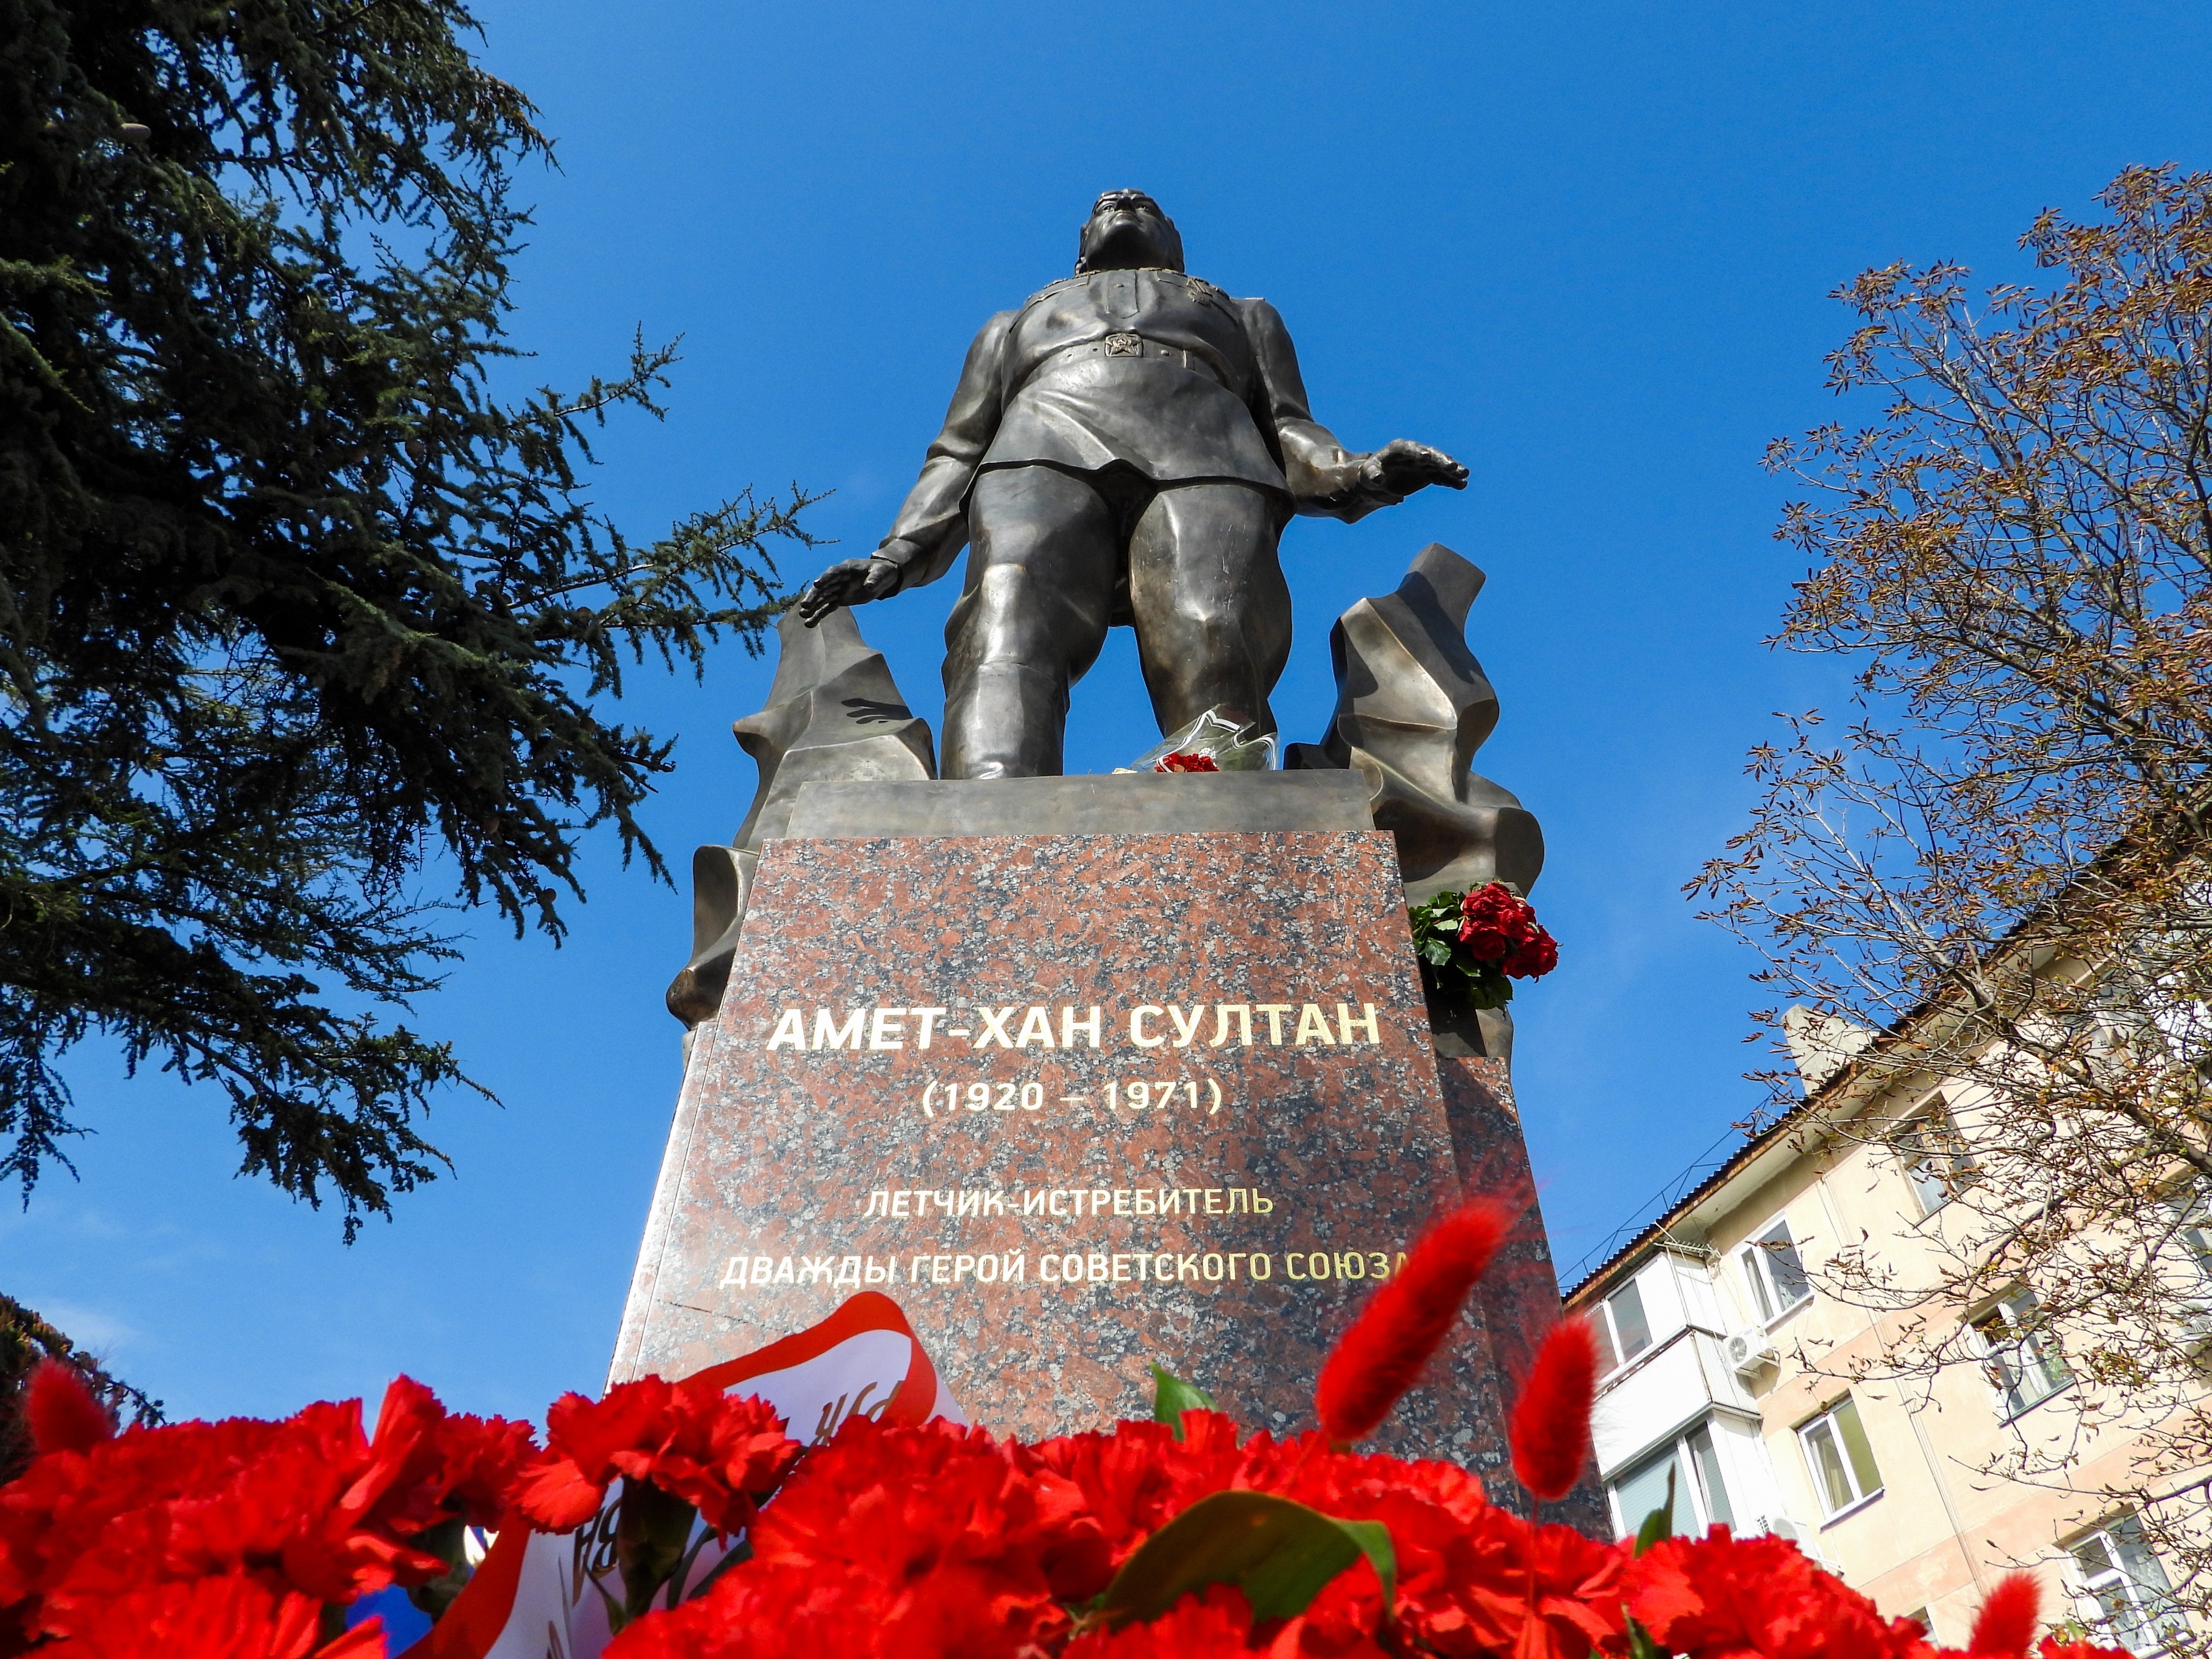 Памятник прославленному военному летчику установлен в Крыму к 100-летию со дня его рождения